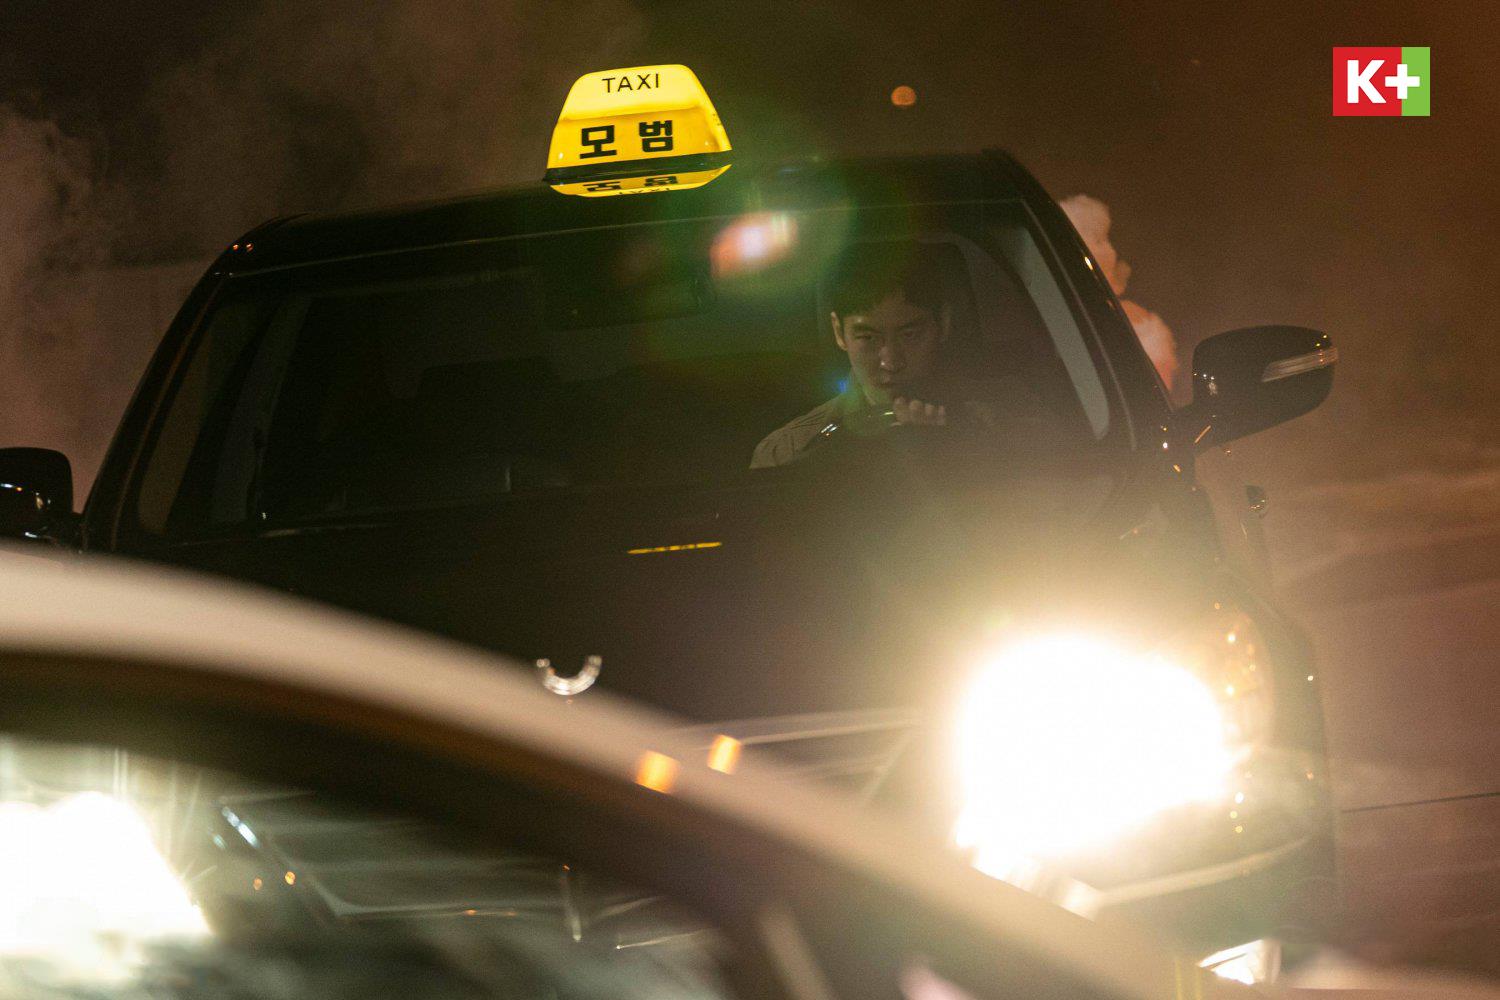 Ẩn Danh - Taxi Driver 2 càng về cuối rating càng khủng, nội dung kịch tính với cuộc đối đầu ngang sức - ảnh 3